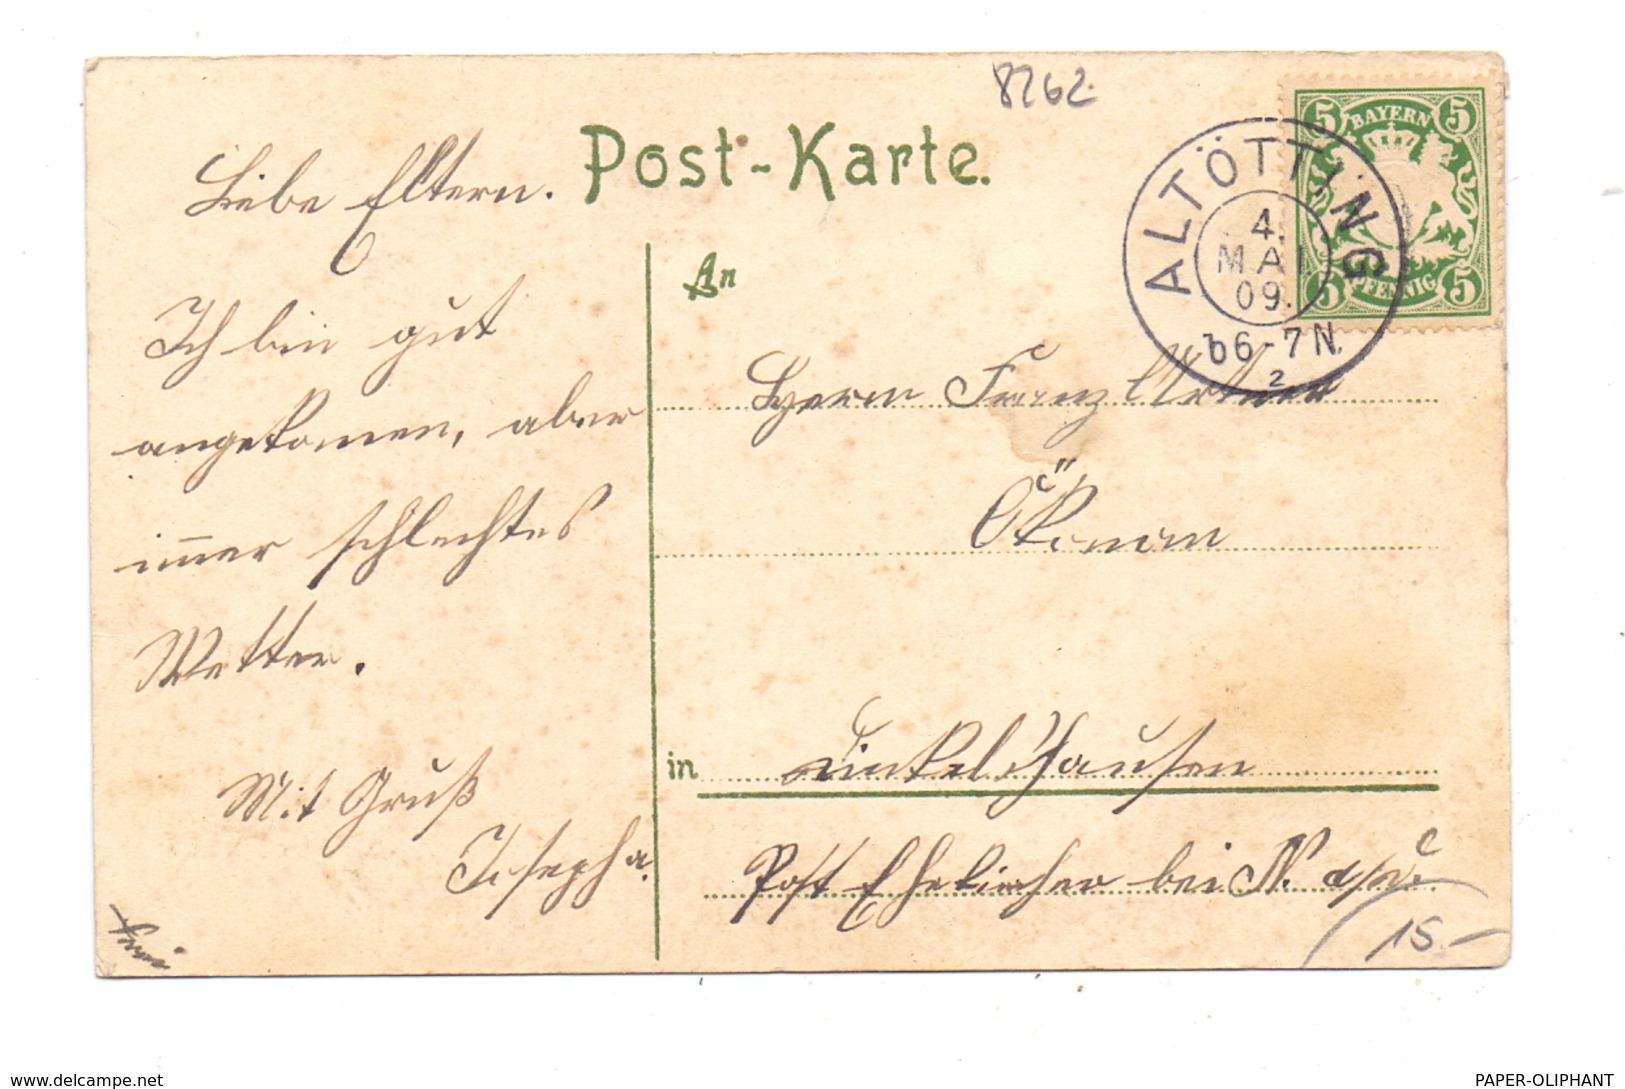 8262 ALTÖTTING, Wallfahrtsort, Mariendarstellung, Jugendstilornamente, 1909 - Altoetting